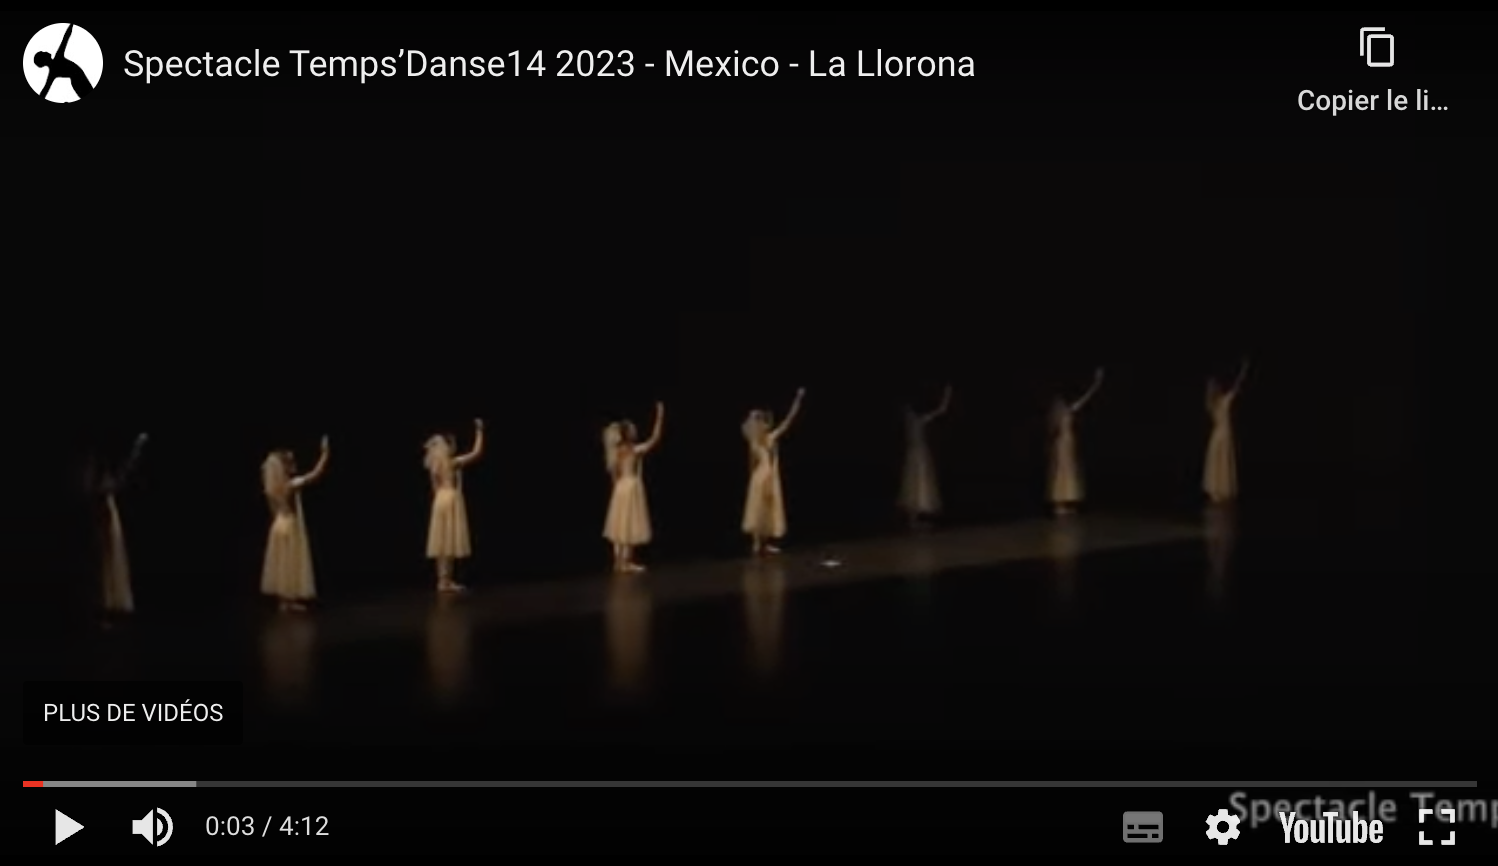 Mexico - La Llorona